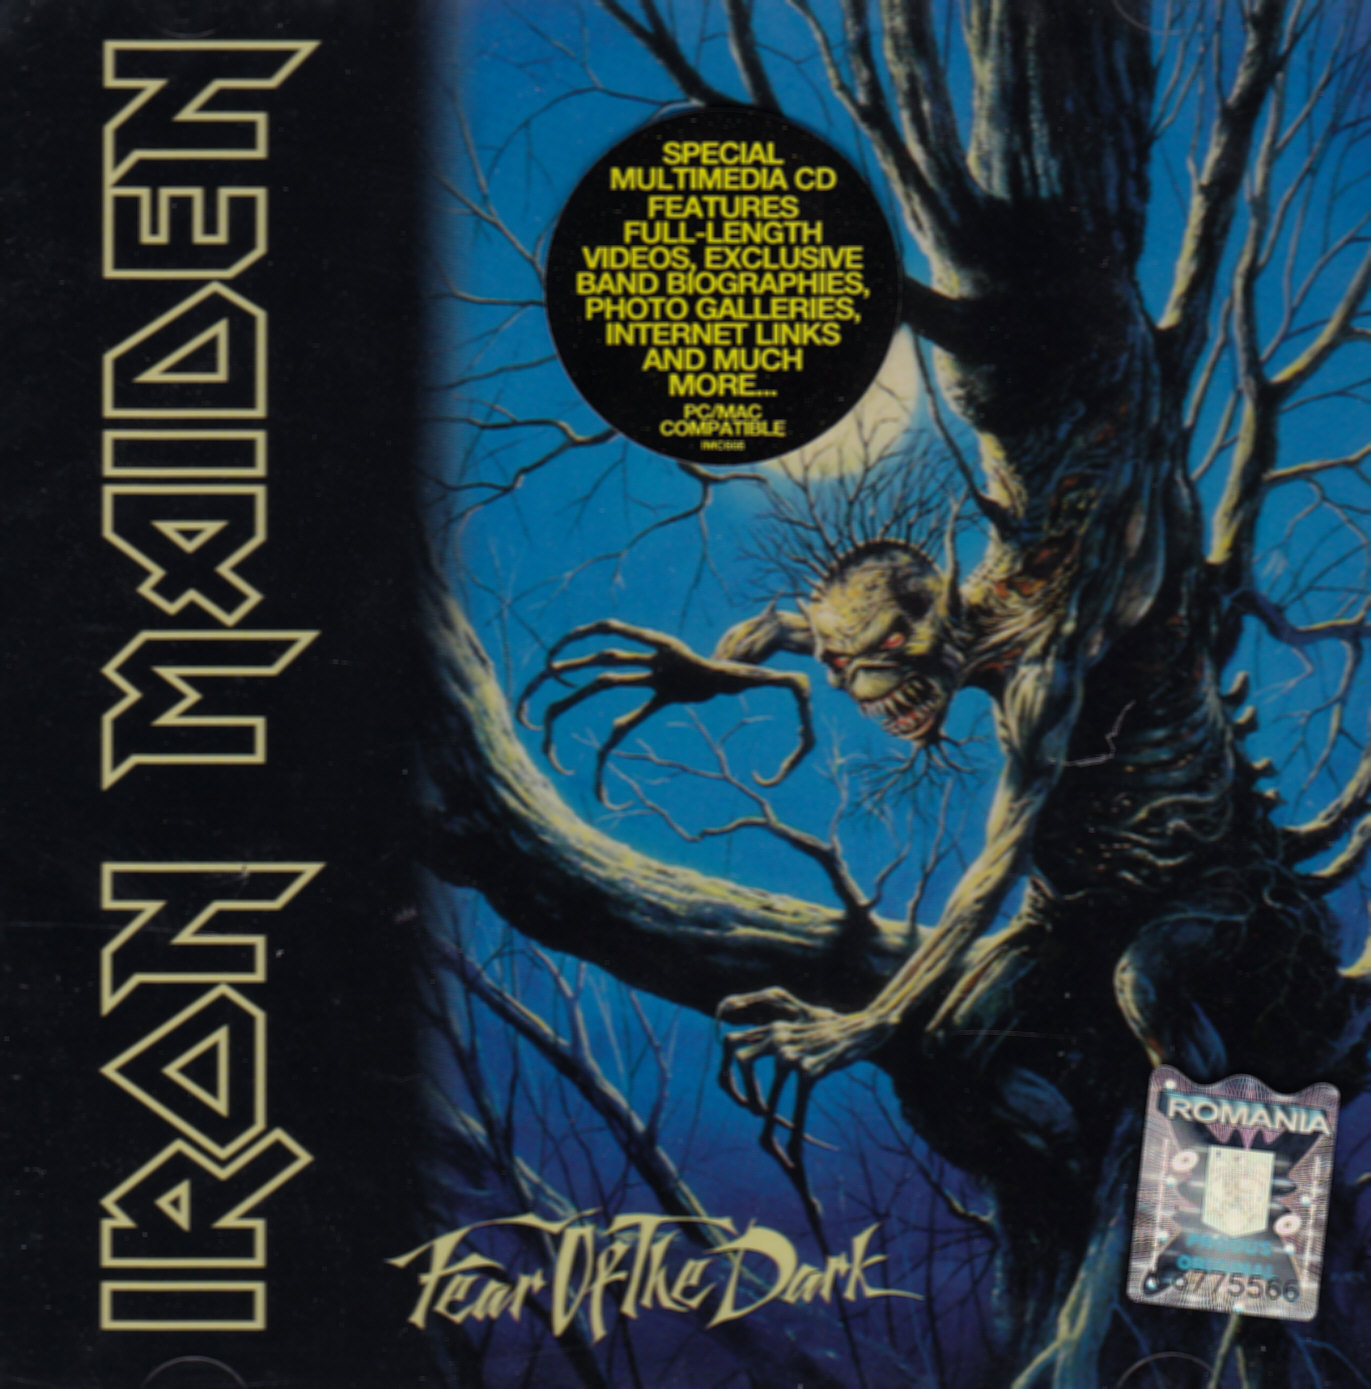 CD Iron Maiden - Fear of the dark